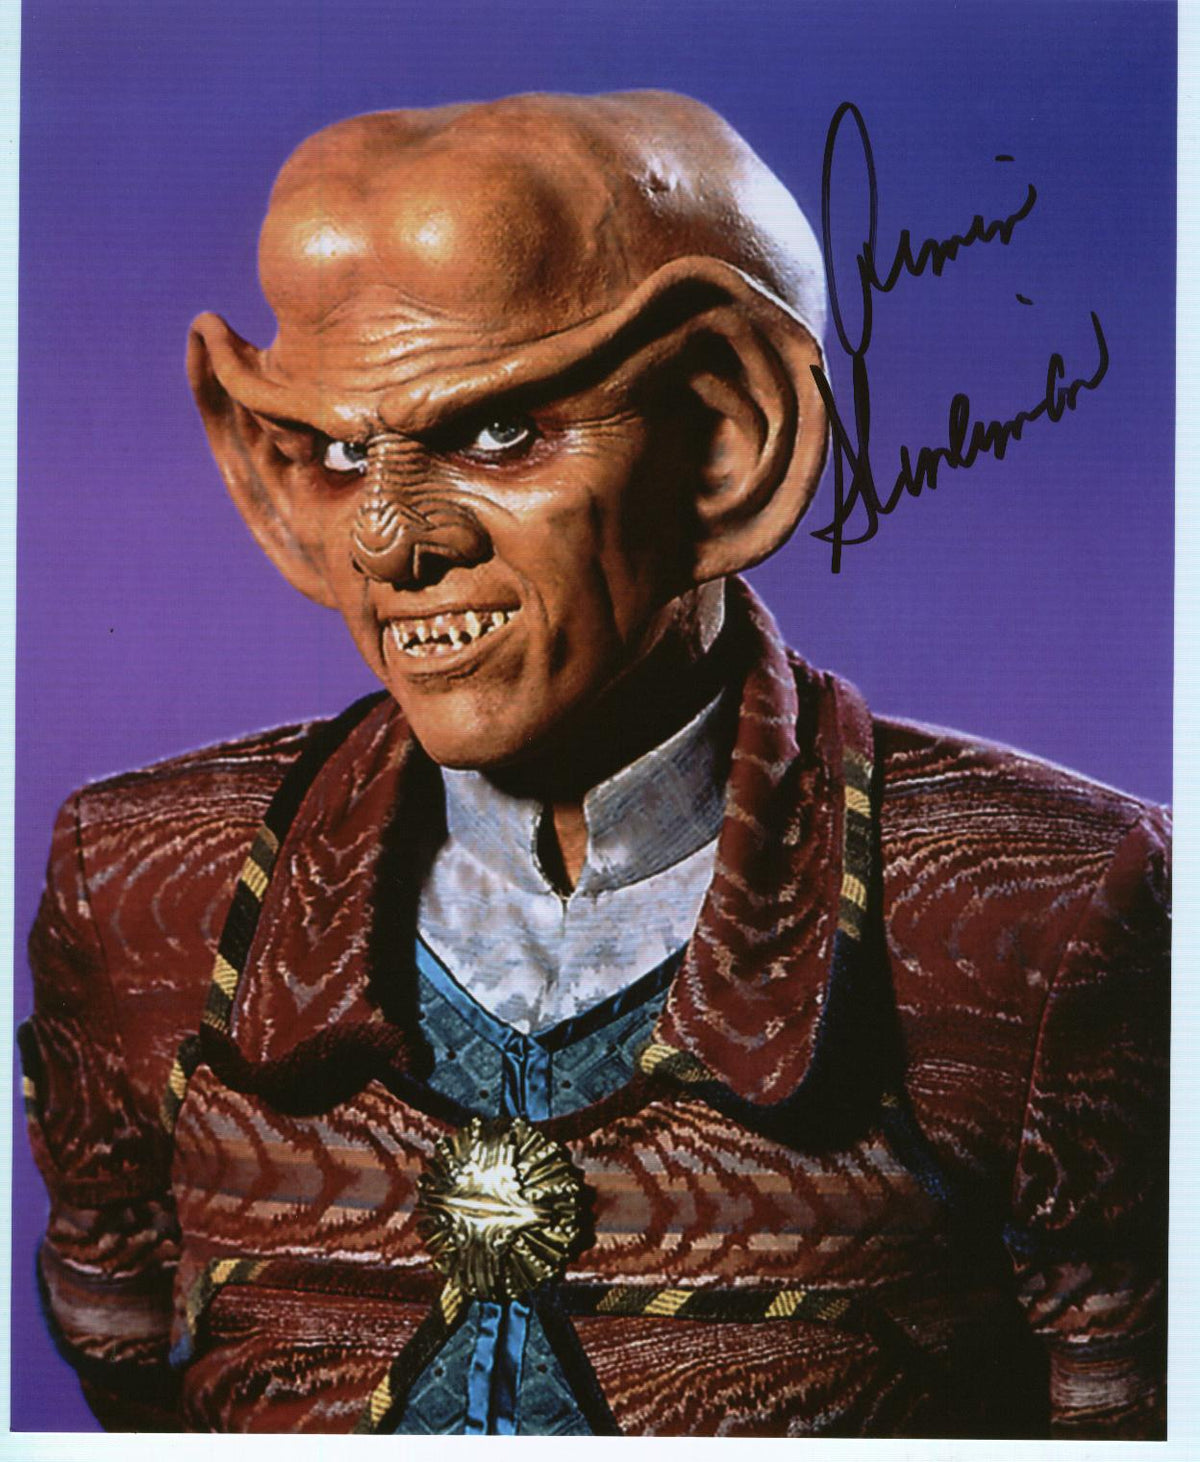 ARMIN SHIMERMAN as Quark - Star Trek: Deep Space Nine